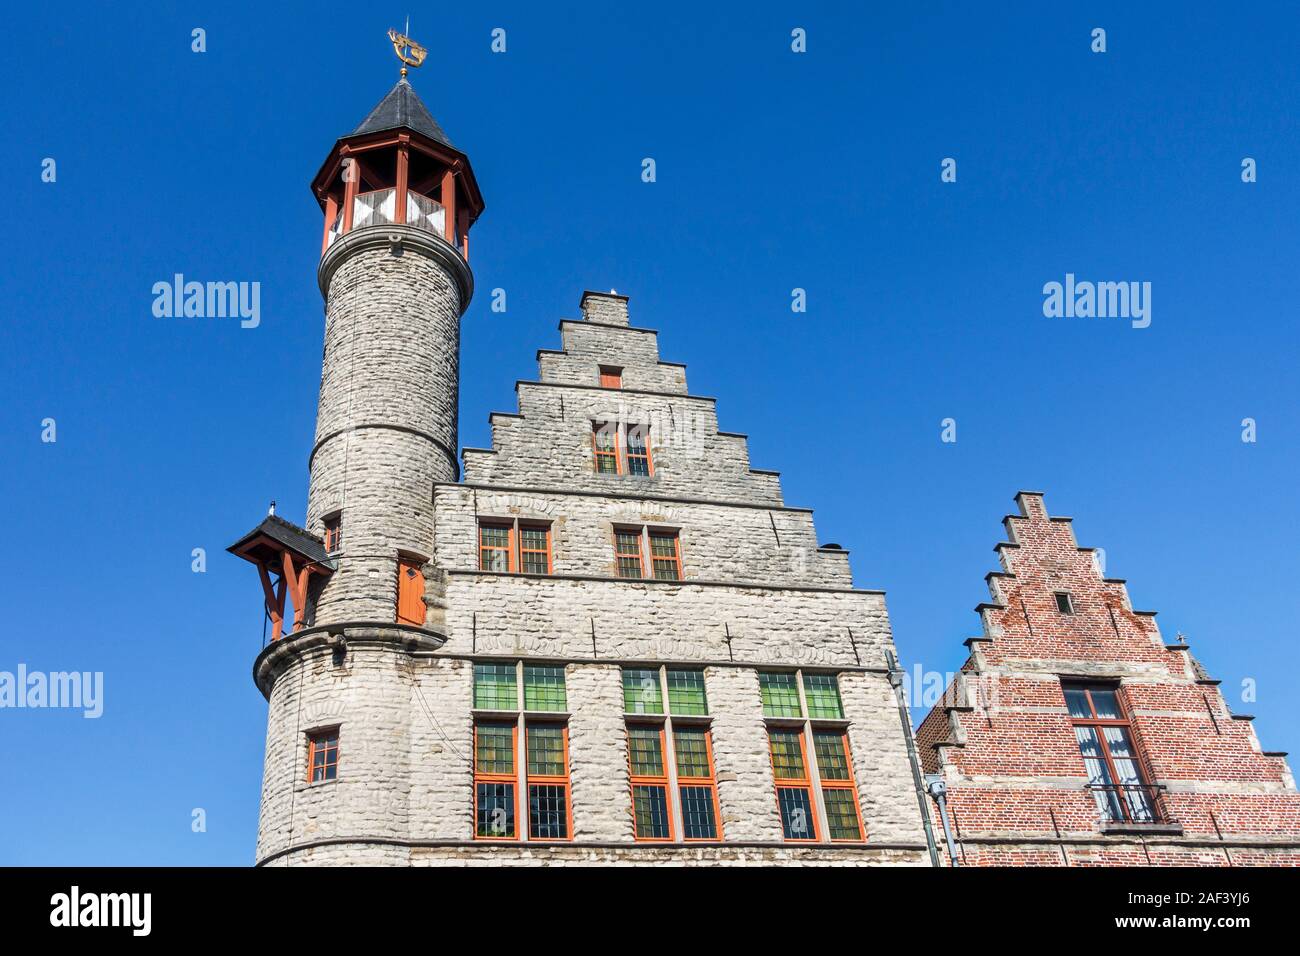 Toreken / torre pequeña, siglo xv guild casa / guildhall en la Vrijdagmarkt / El mercado de los viernes en la ciudad de Gante, Flandes oriental / Gent, Bélgica Foto de stock